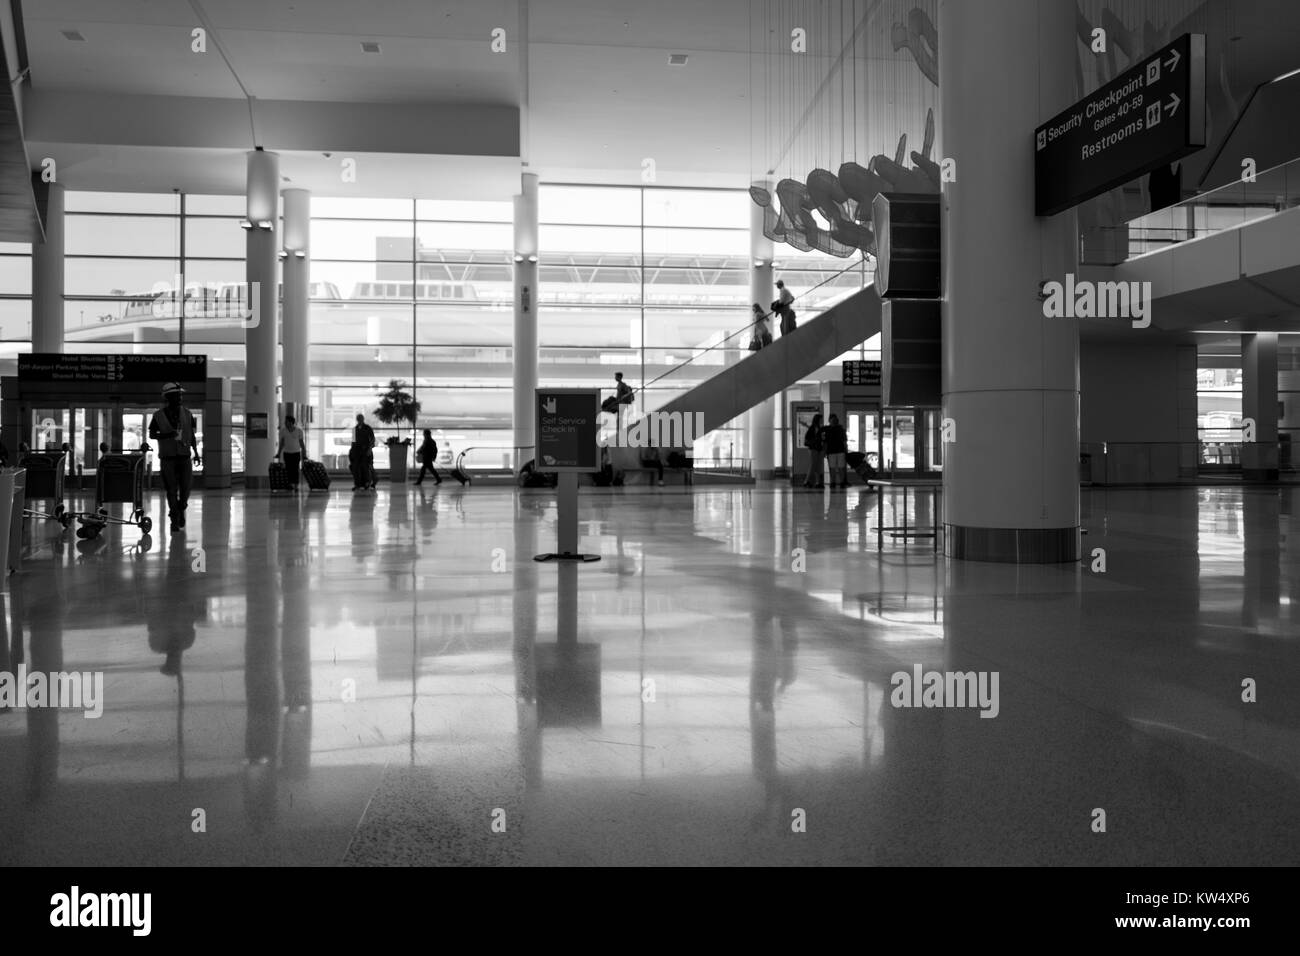 Lobby all'entrata per il Terminal 2 dell'Aeroporto Internazionale di San Francisco, South San Francisco, California, 24 settembre 2016. Foto Stock